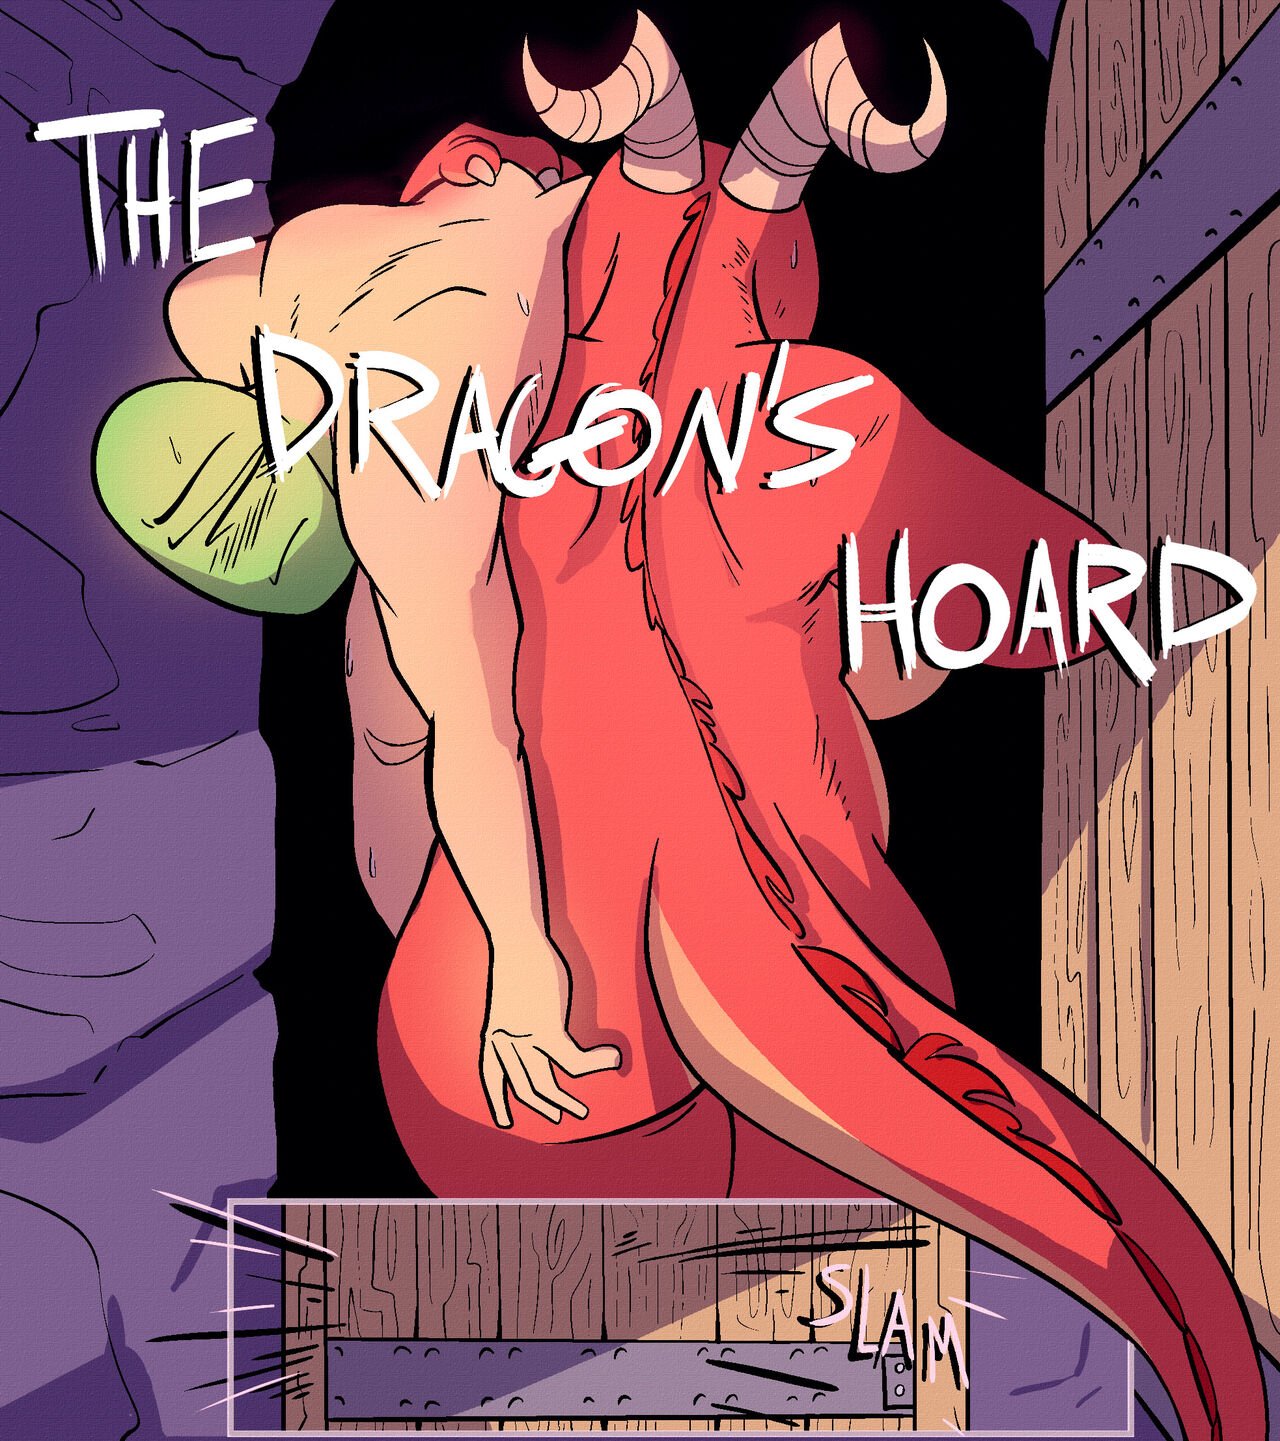 Porn 3d Erotic Fantasy Art Dragons - The Dragon's Hoard (Ongoing) comic porn | HD Porn Comics